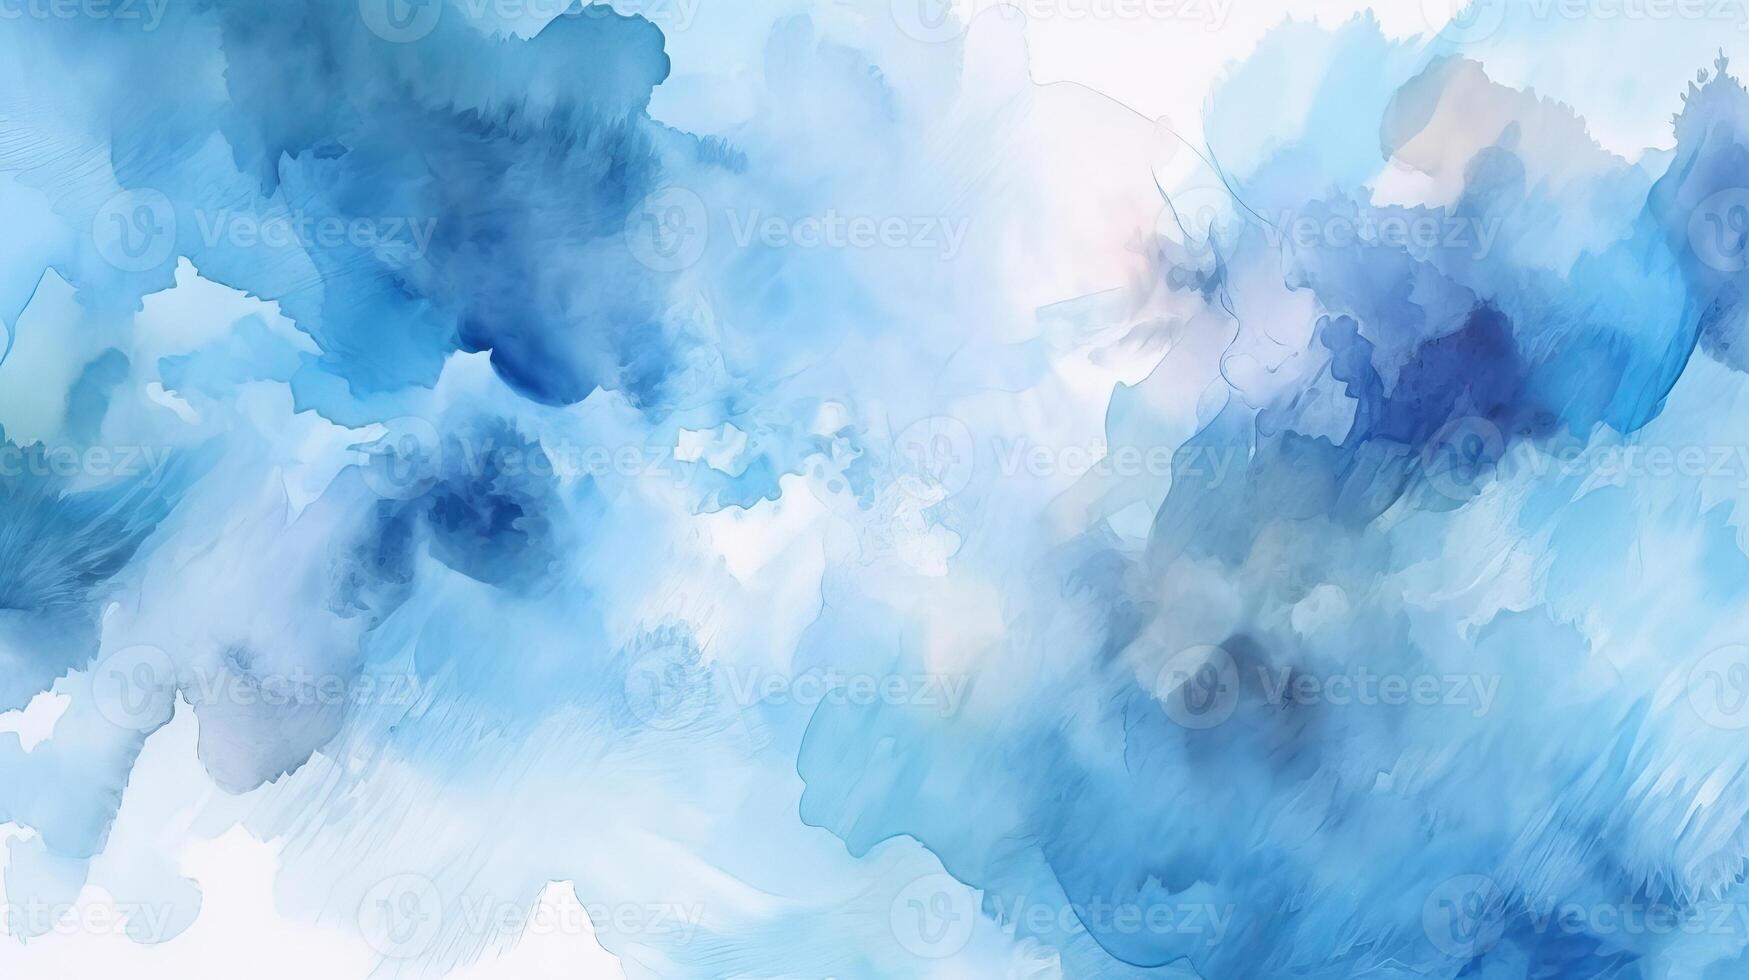 merkwaardig waterverf tinten bewolkt en onscherp bewolkt blauw lucht fundament. illustratie, ai gegenereerd foto